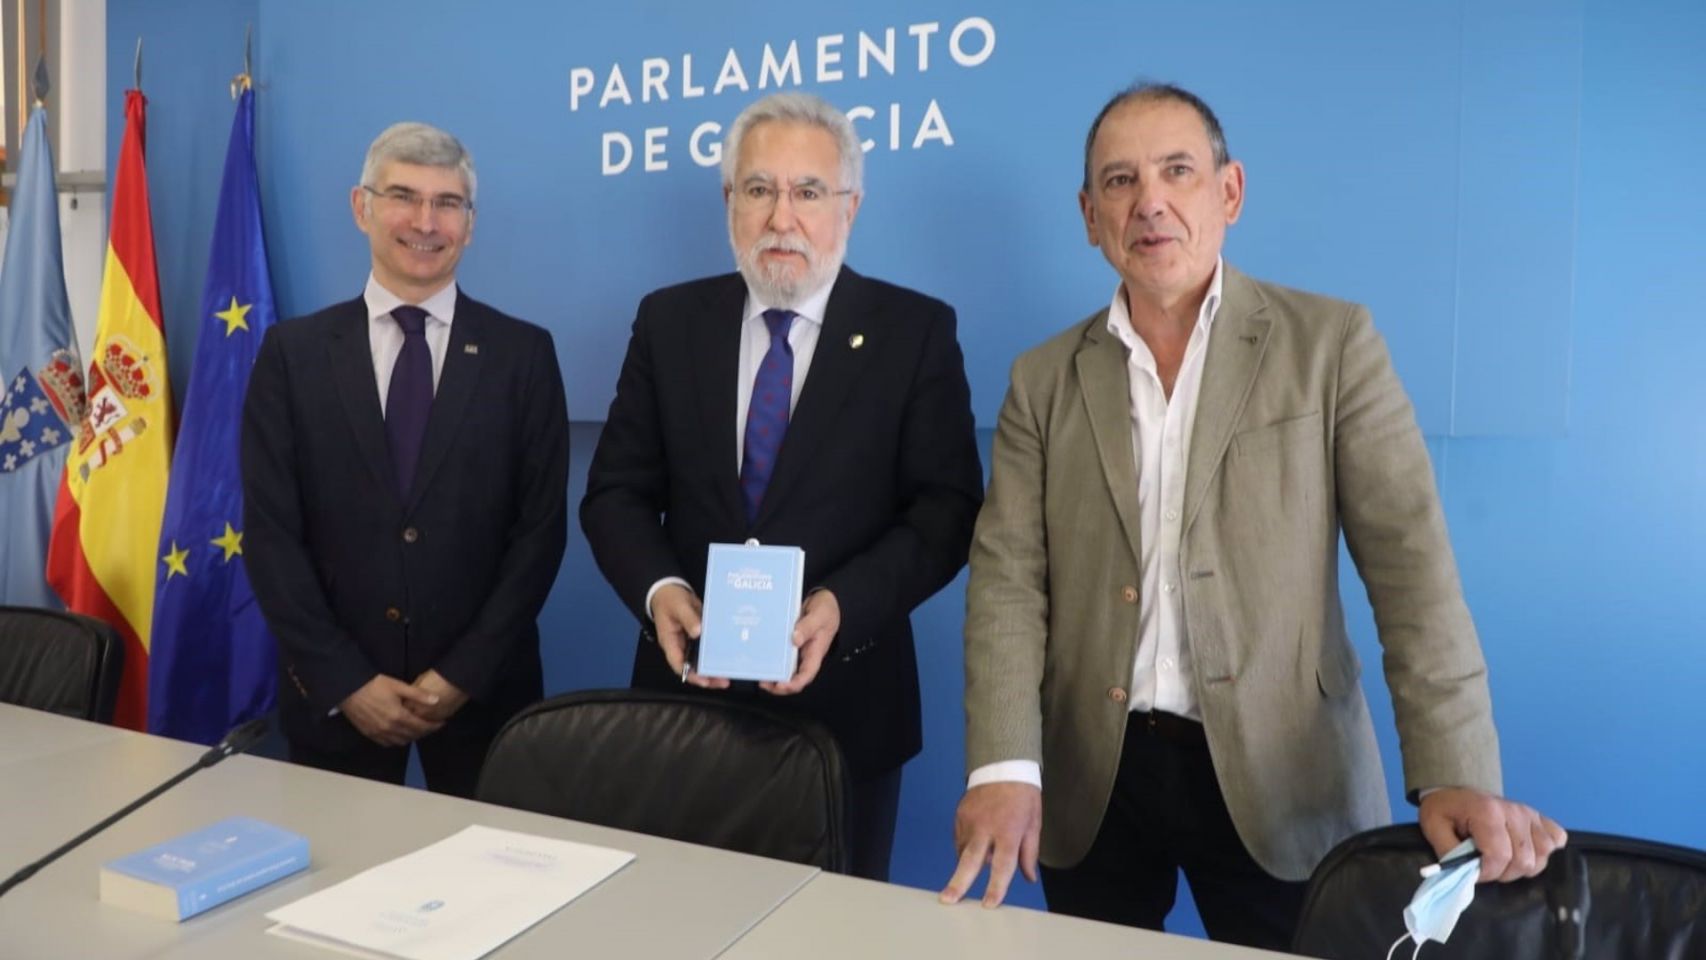 Acto de presentación del Código Parlamentario de Galicia